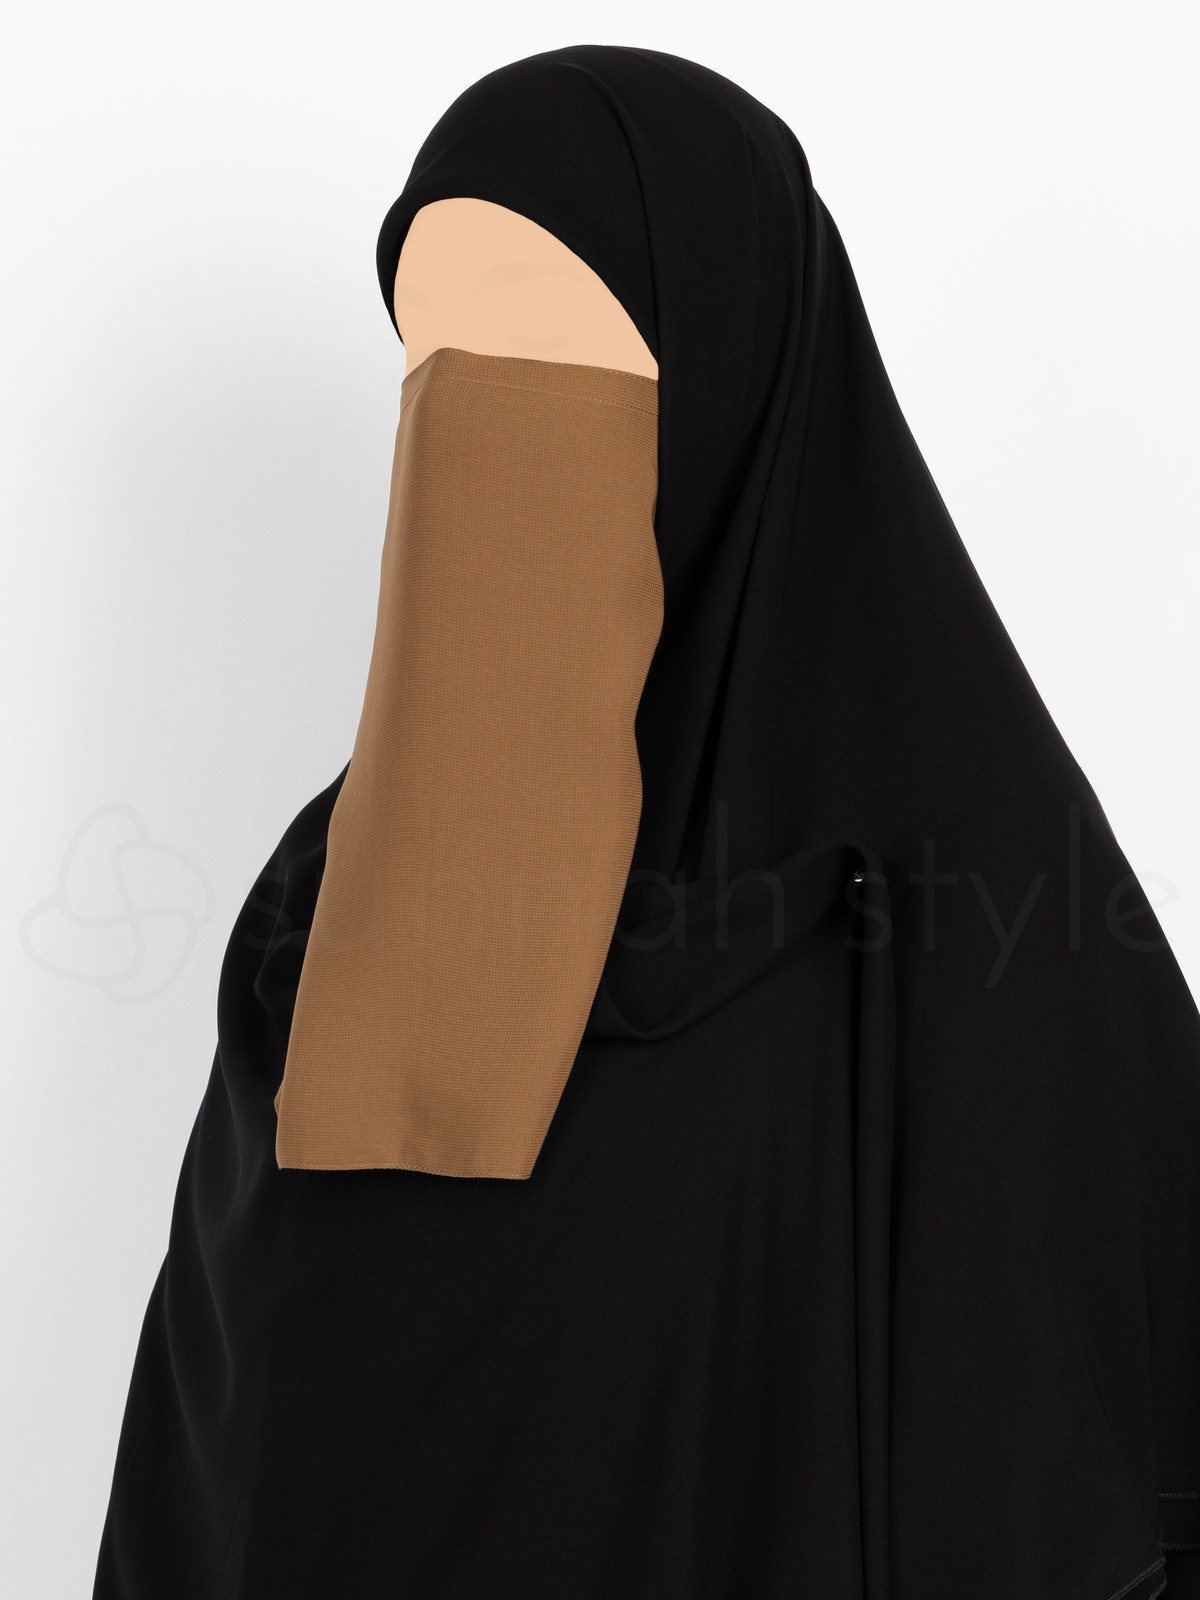 Sunnah Style - Tying Half Niqab (Caramel)